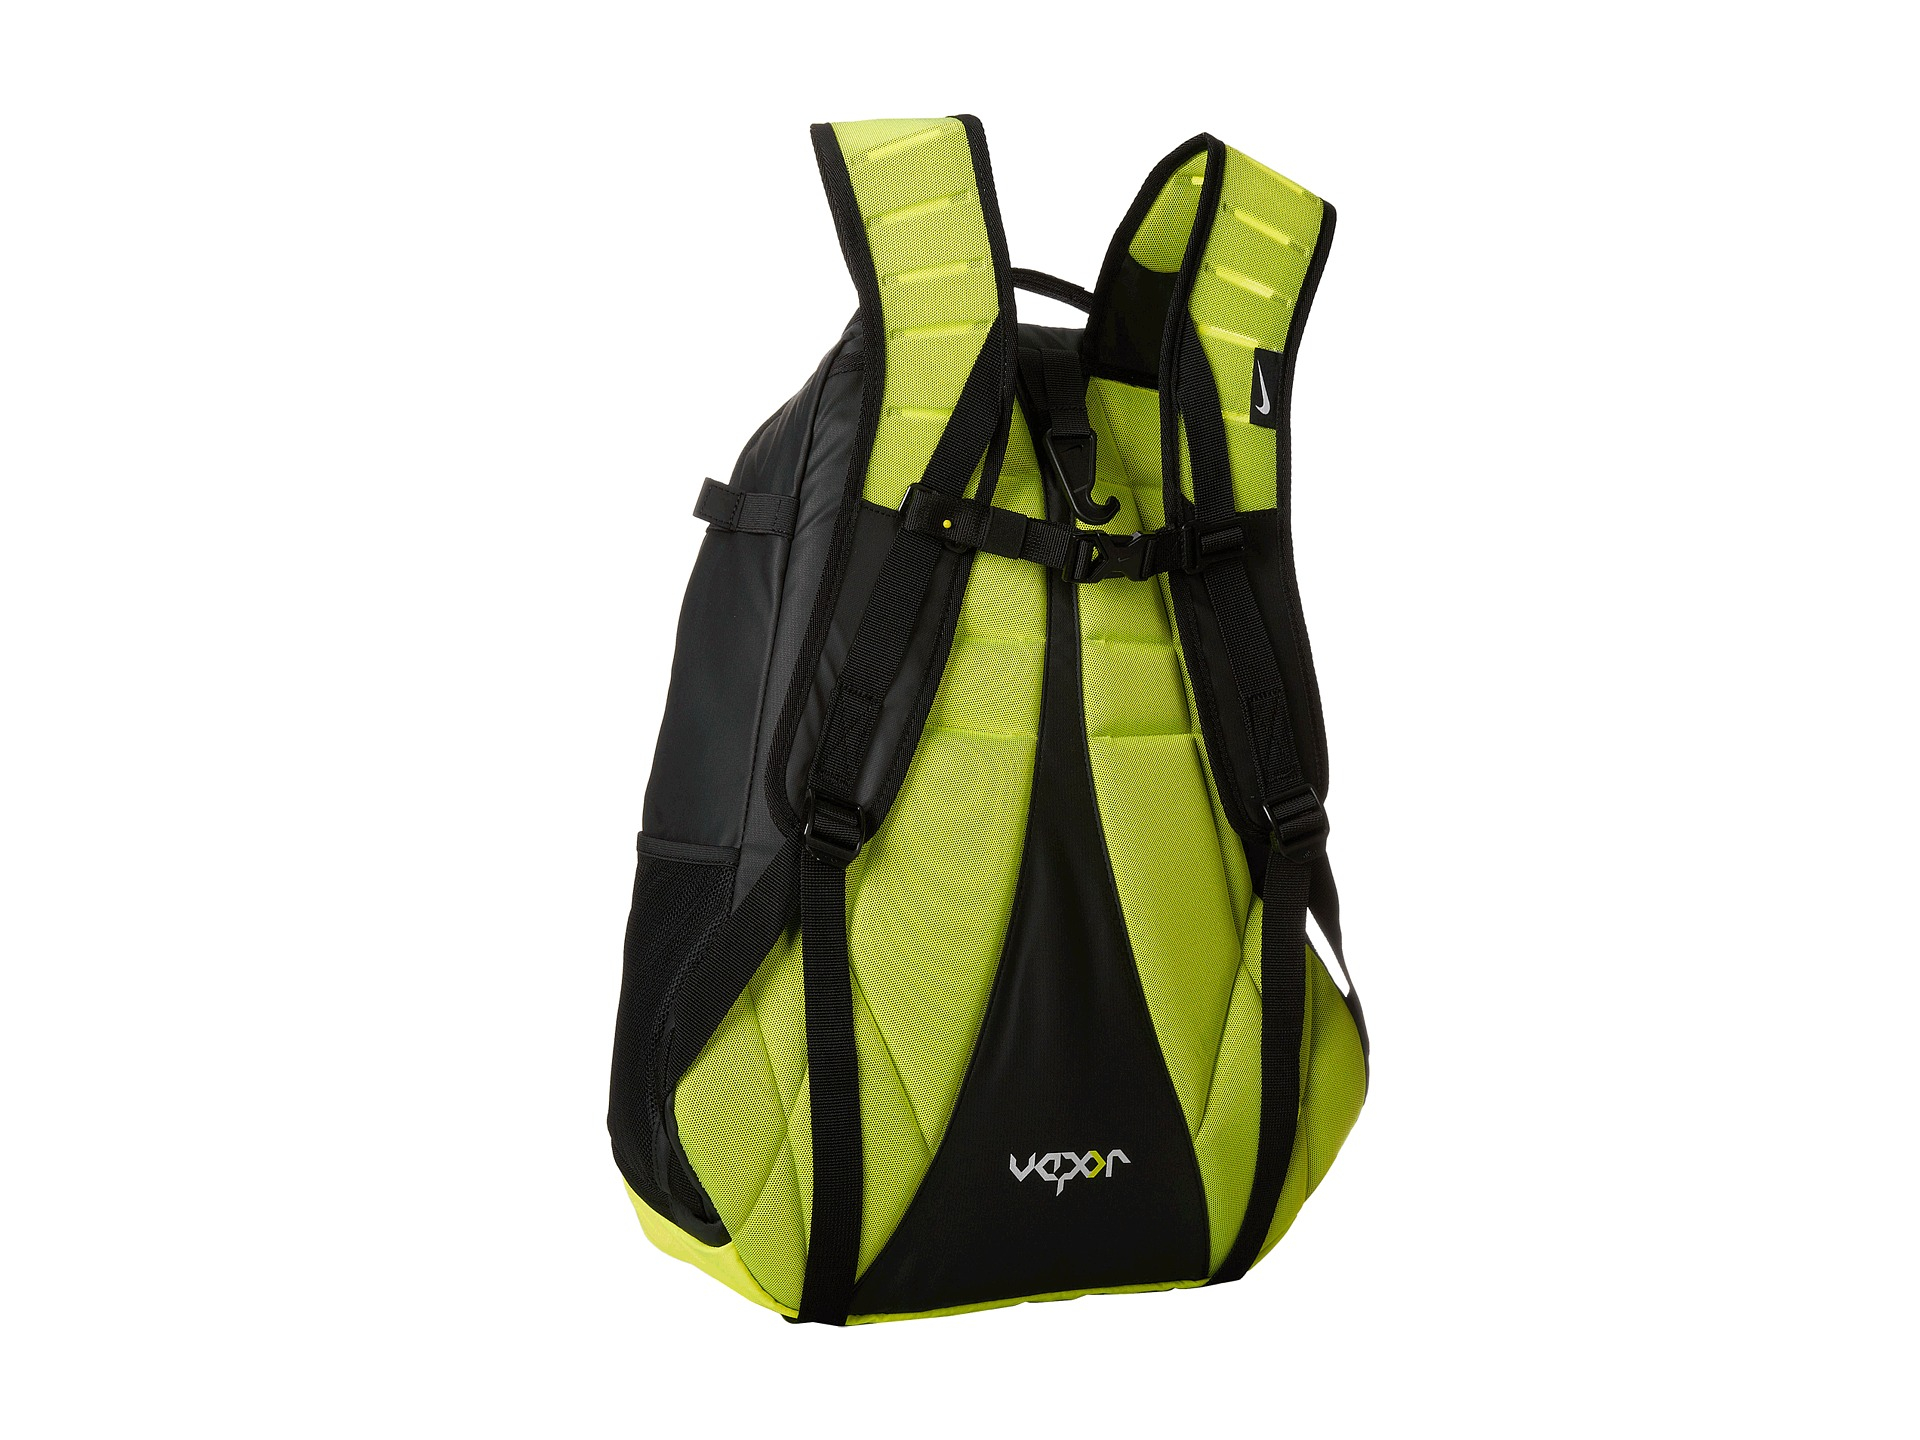 Nike Vapor Elite Backpack in Green - Lyst